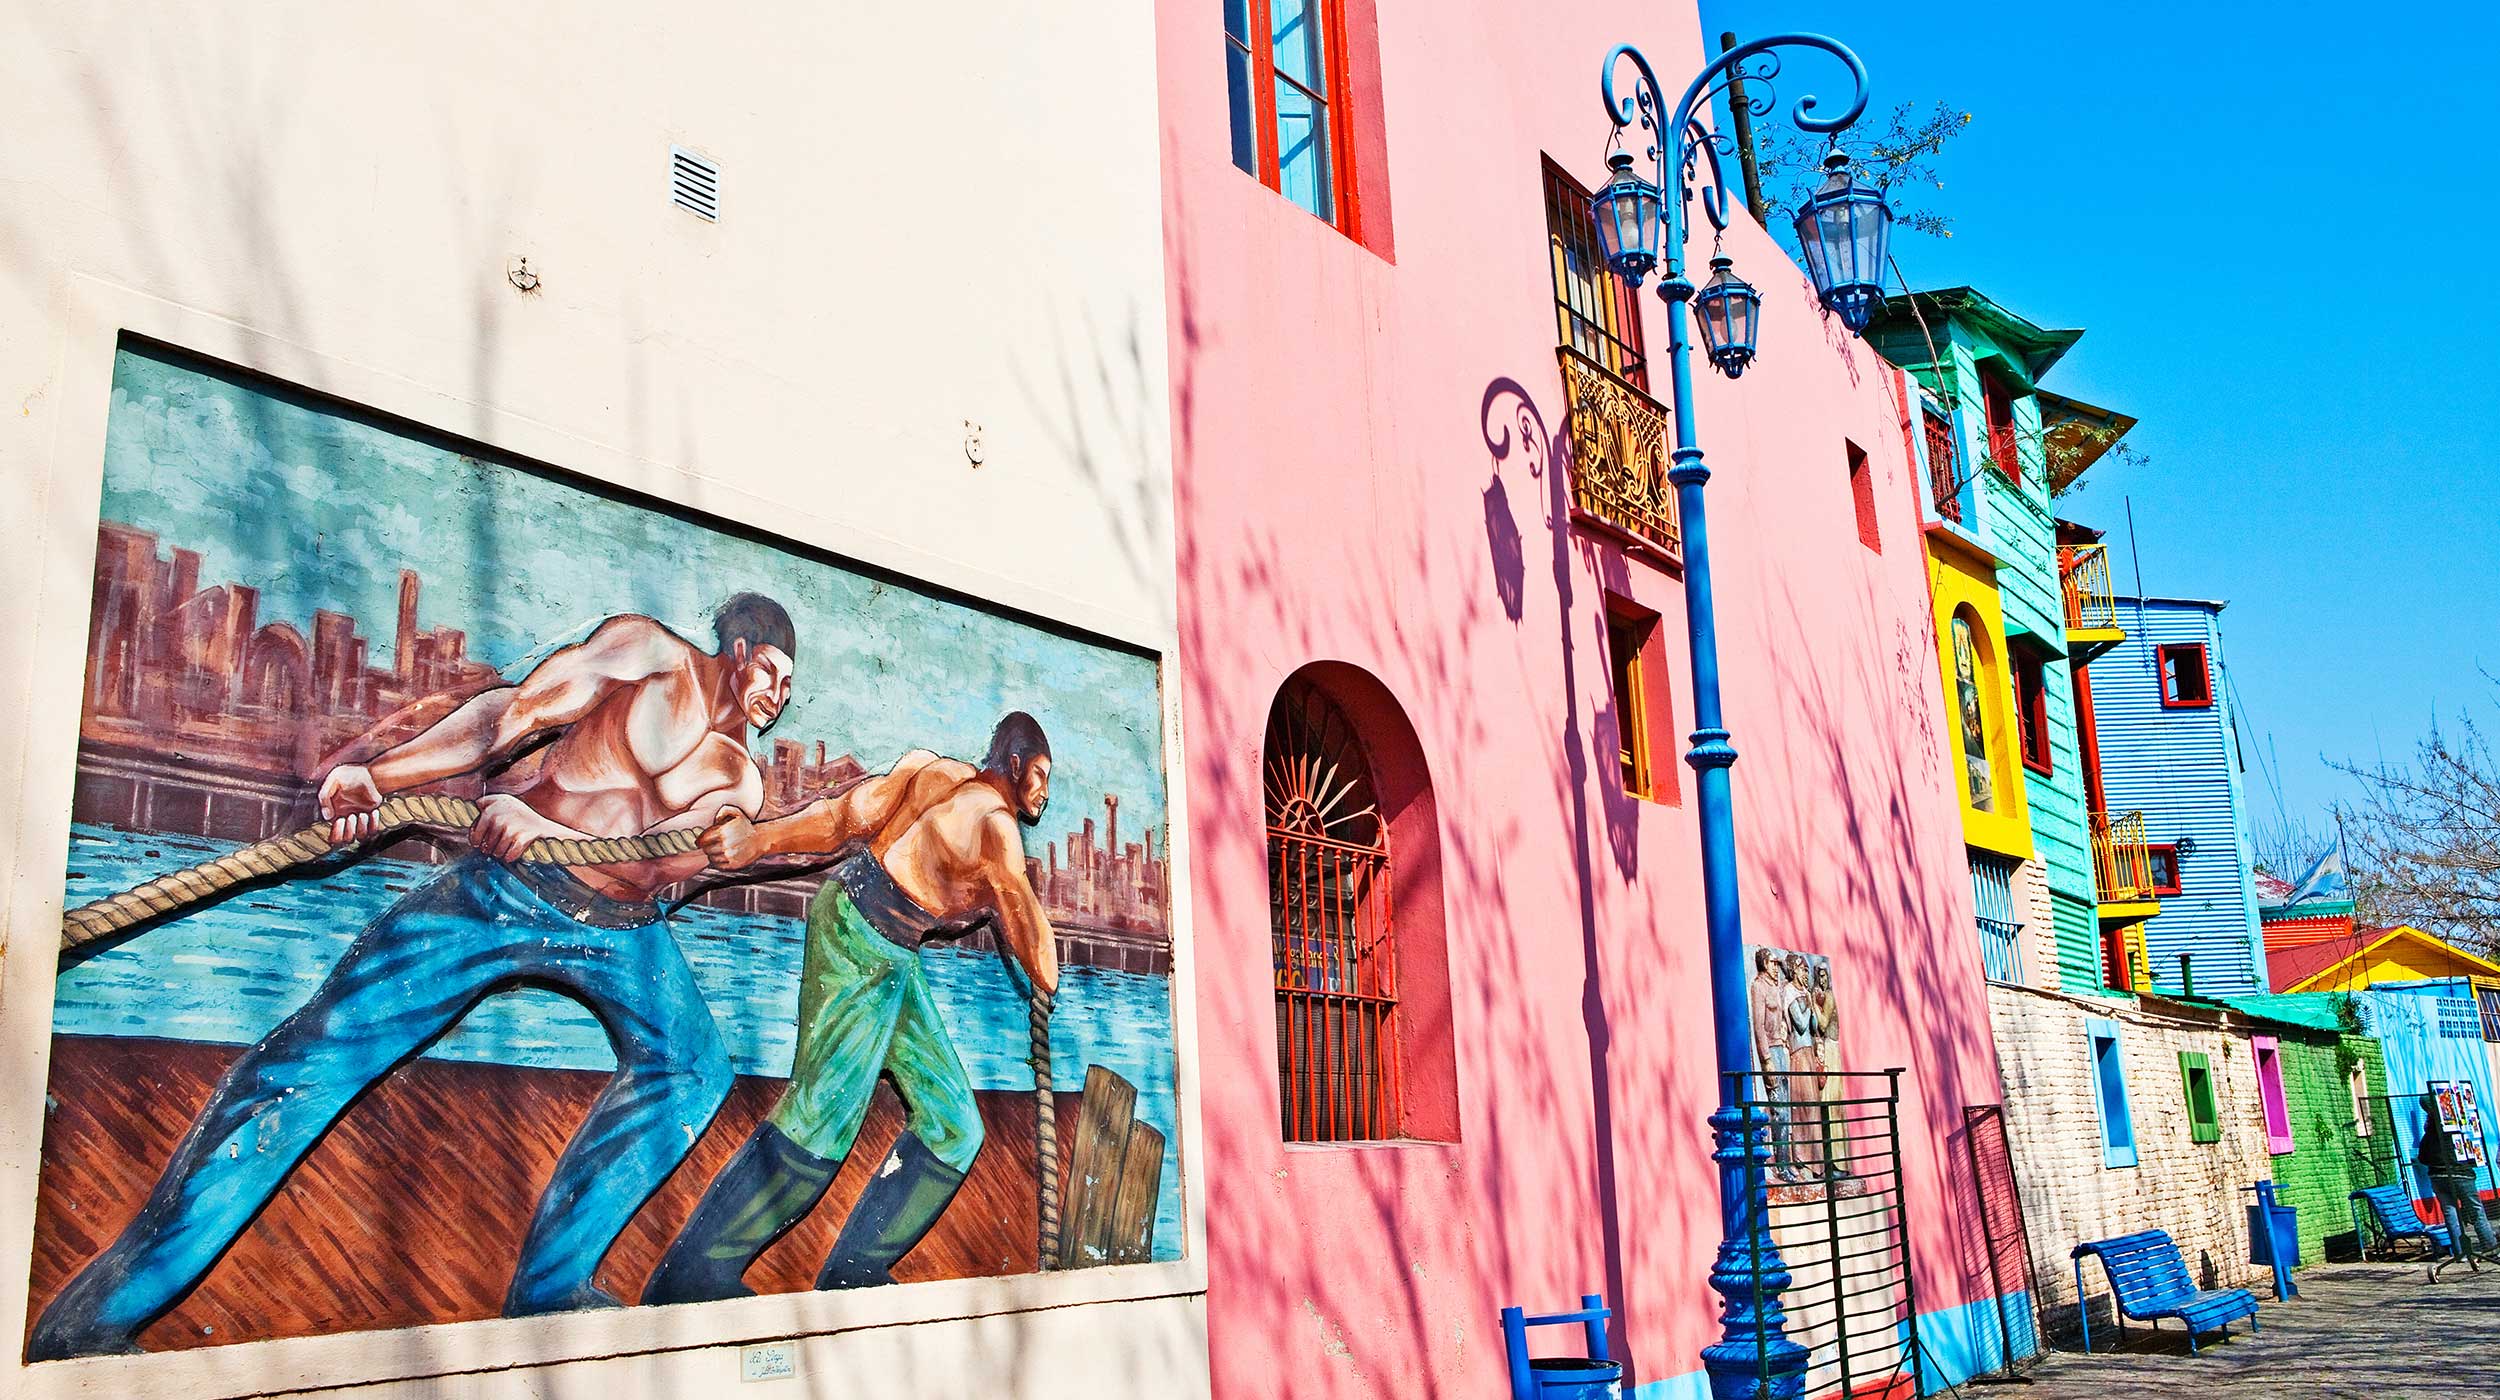 Painted buildings, Caminito, La Boca, Buenos Aires